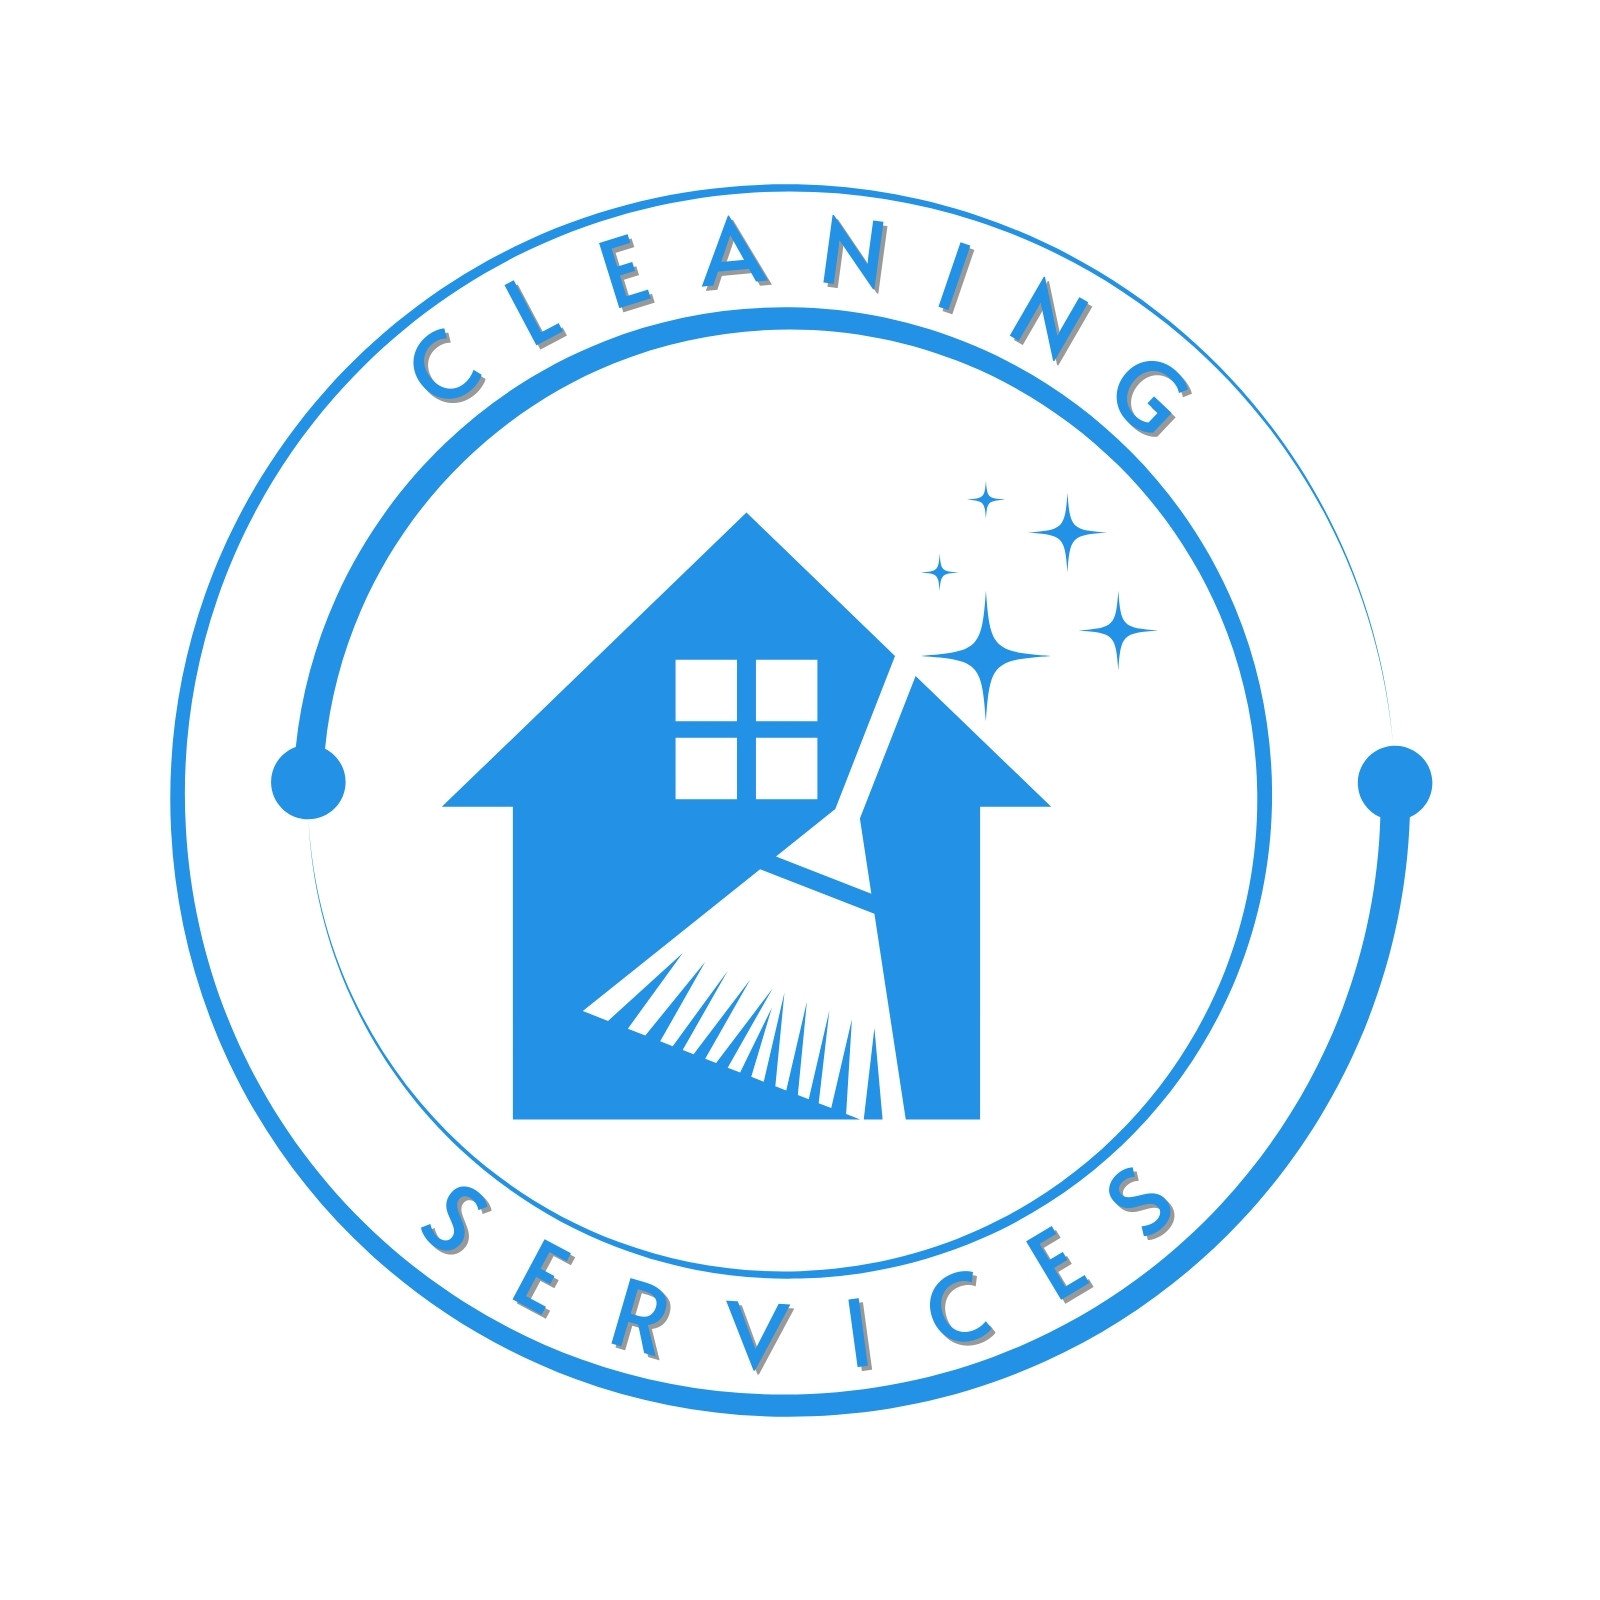 unique cleaning services logo